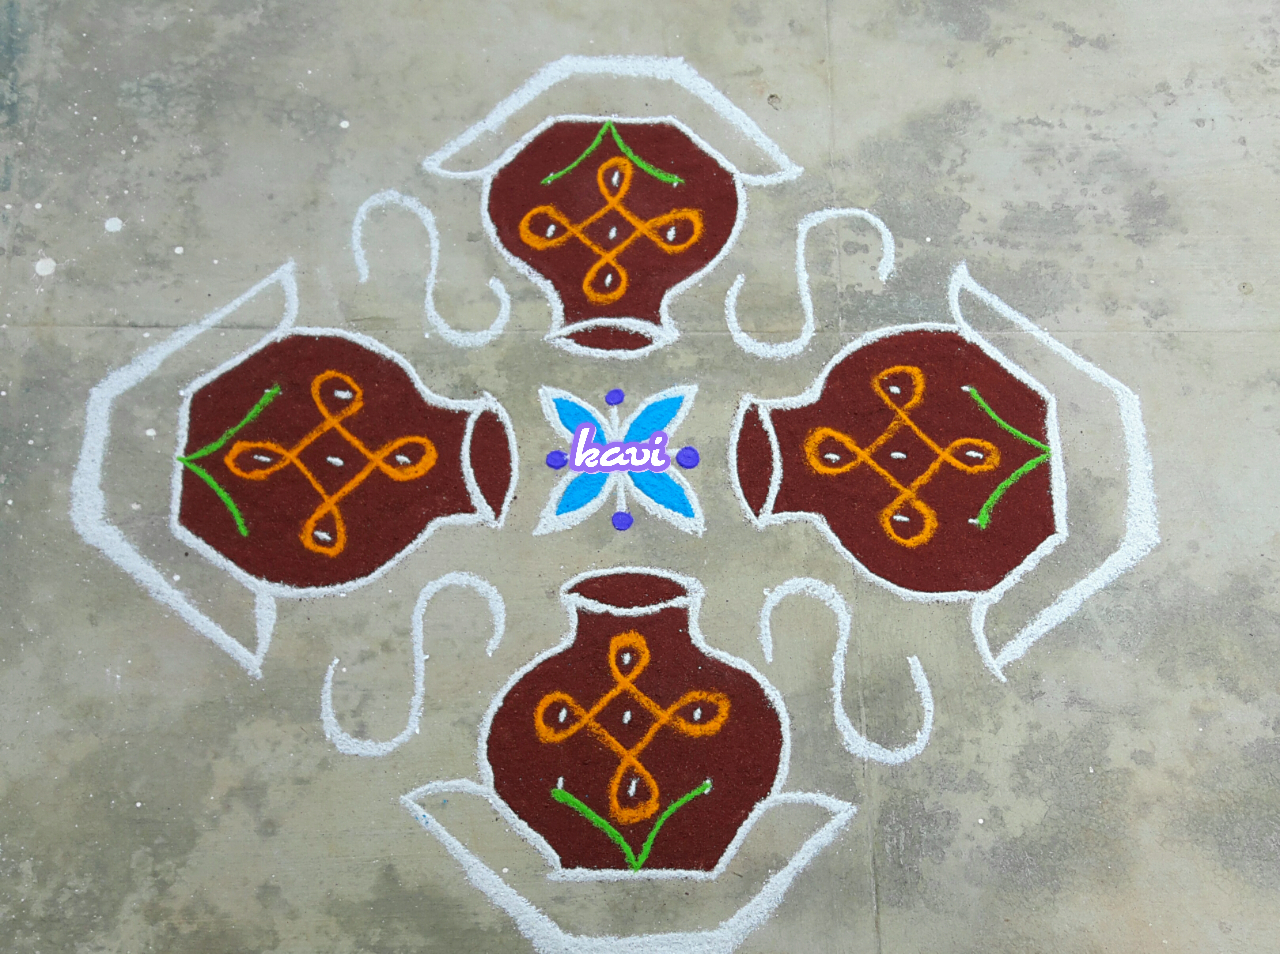 Pot Kolam in 15 dots – Kolams of India